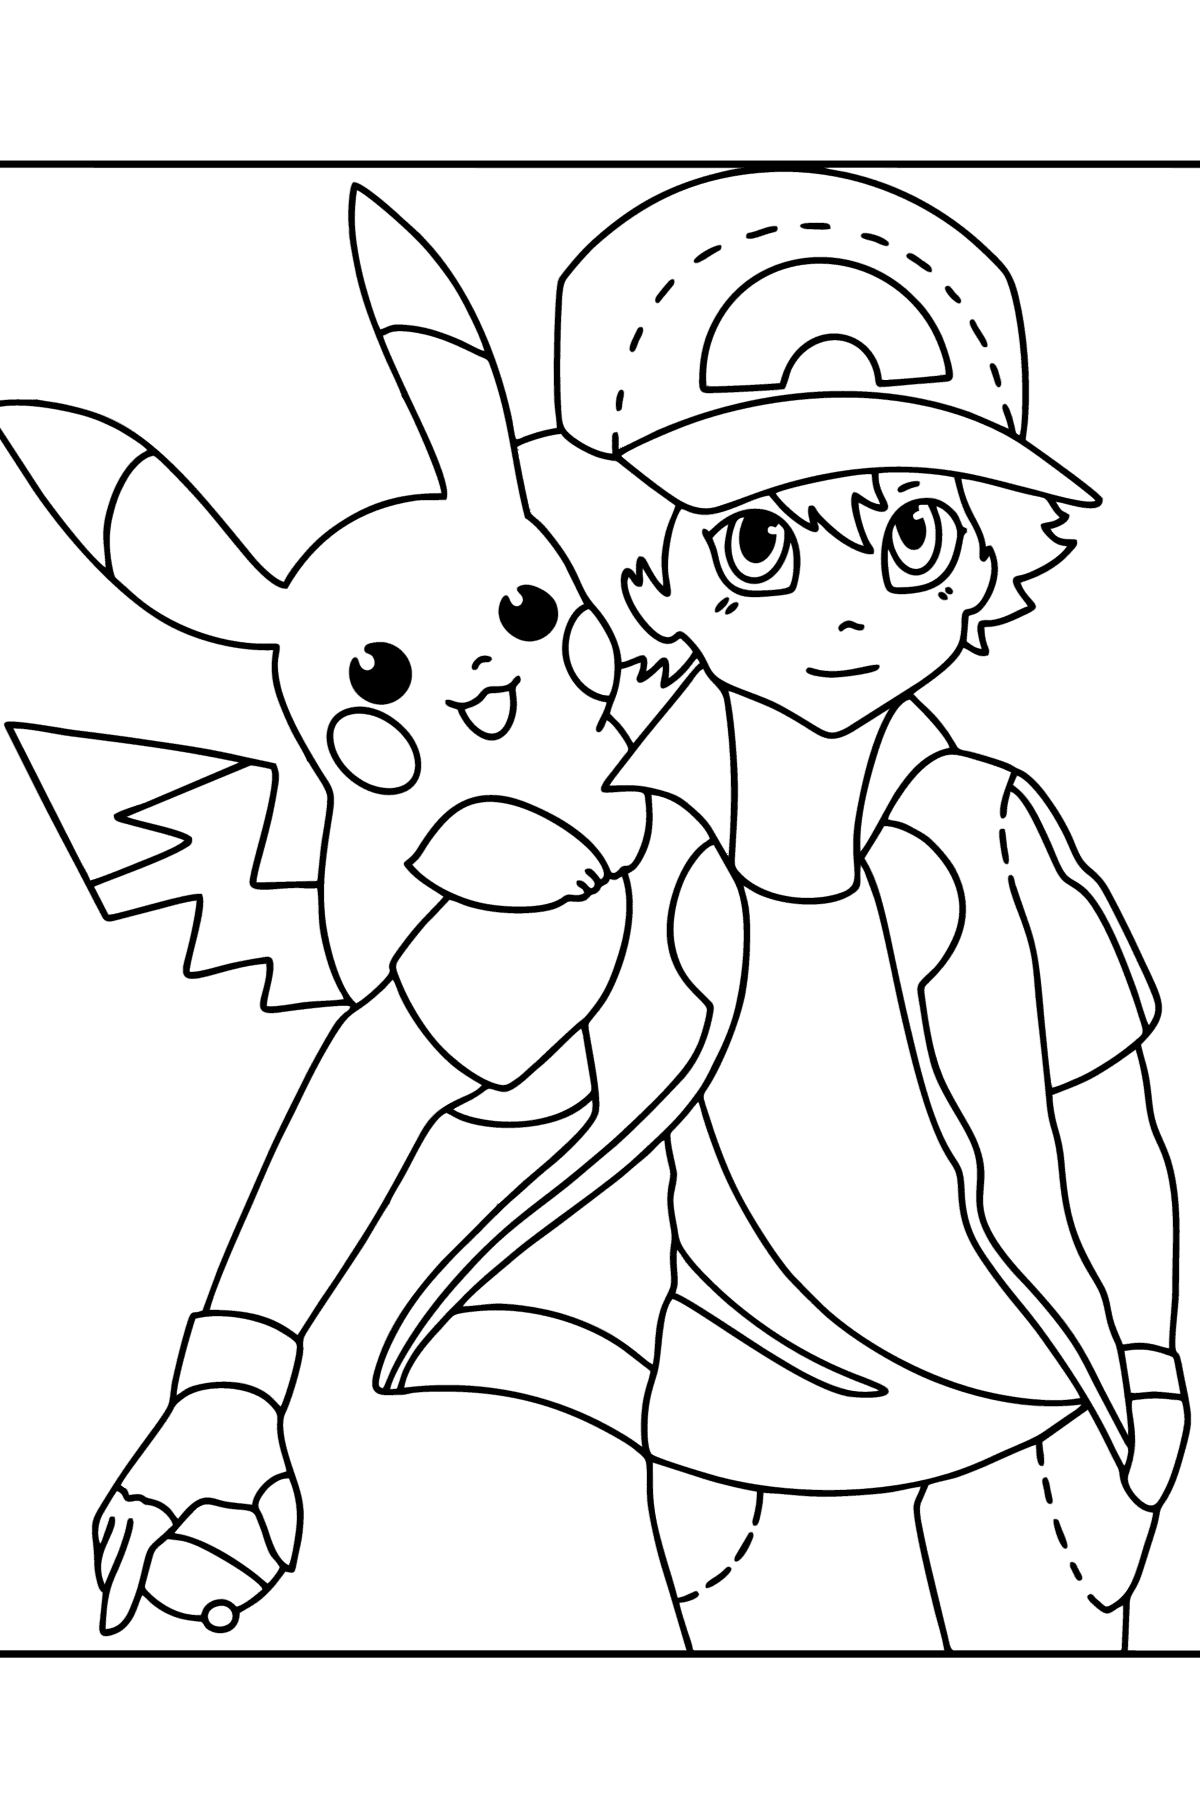 Boyama sayfası Pokémon XY Ash Ketchum - Boyamalar çocuklar için